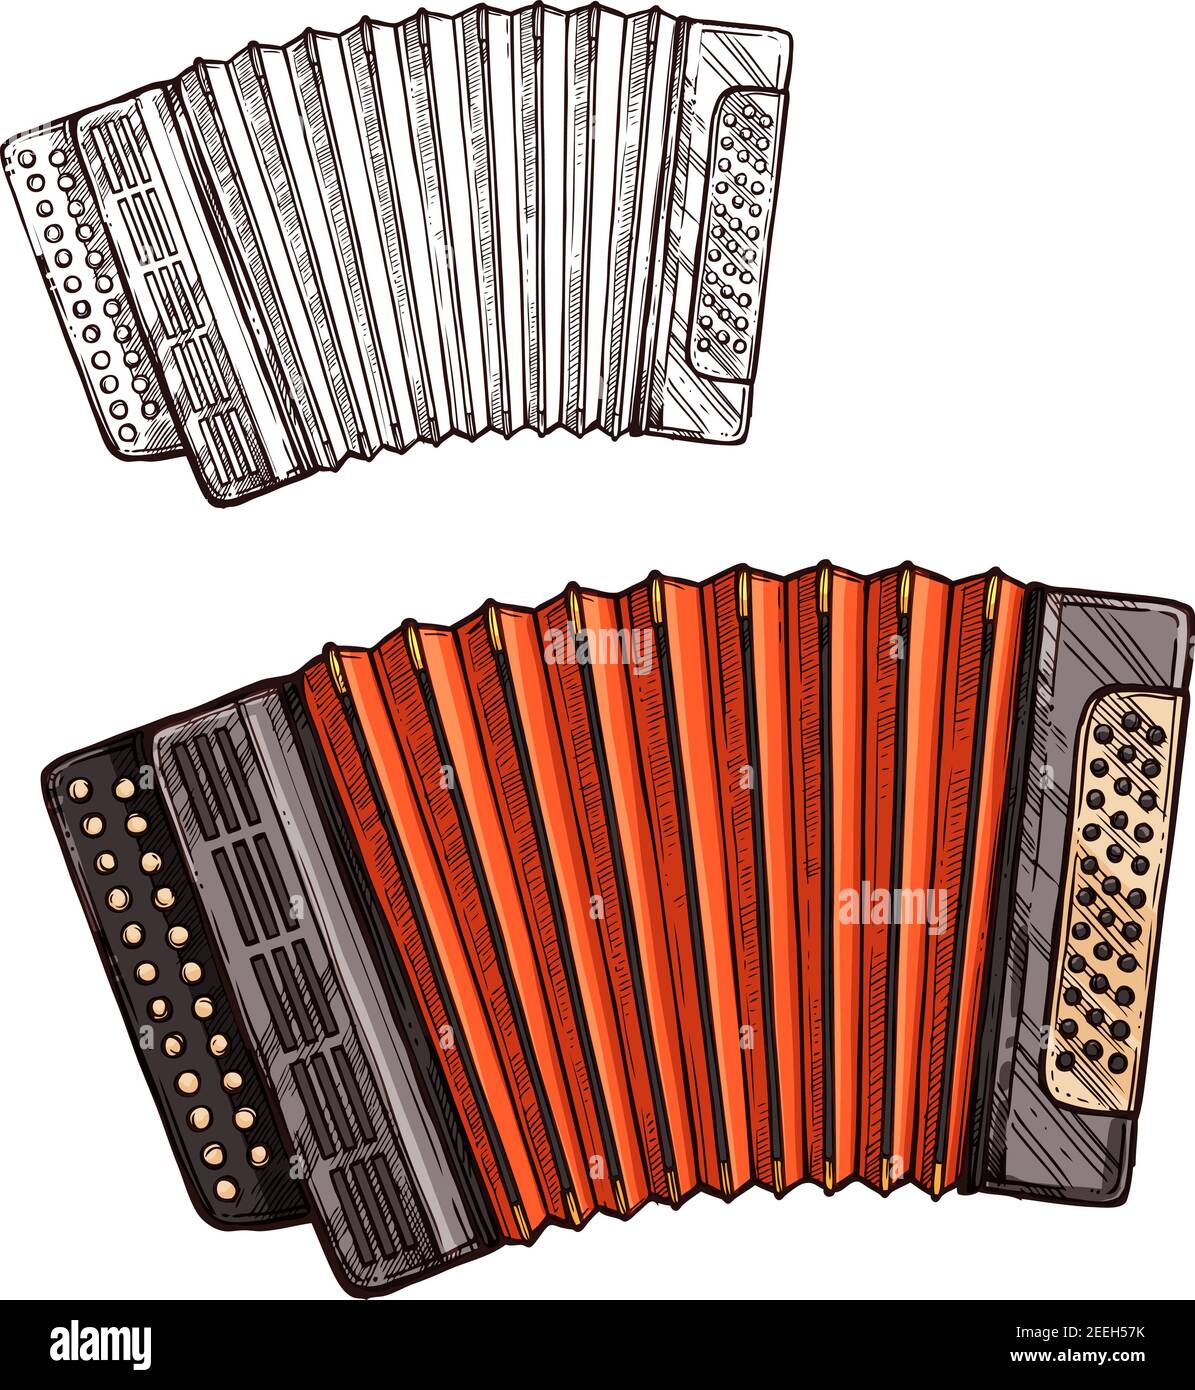 Instrument de musique accordéon. Dessin vectoriel symbole de type folk ou  national de piano accordéon ou bayan russe avec touches pour conc. Musique  ethnique Image Vectorielle Stock - Alamy